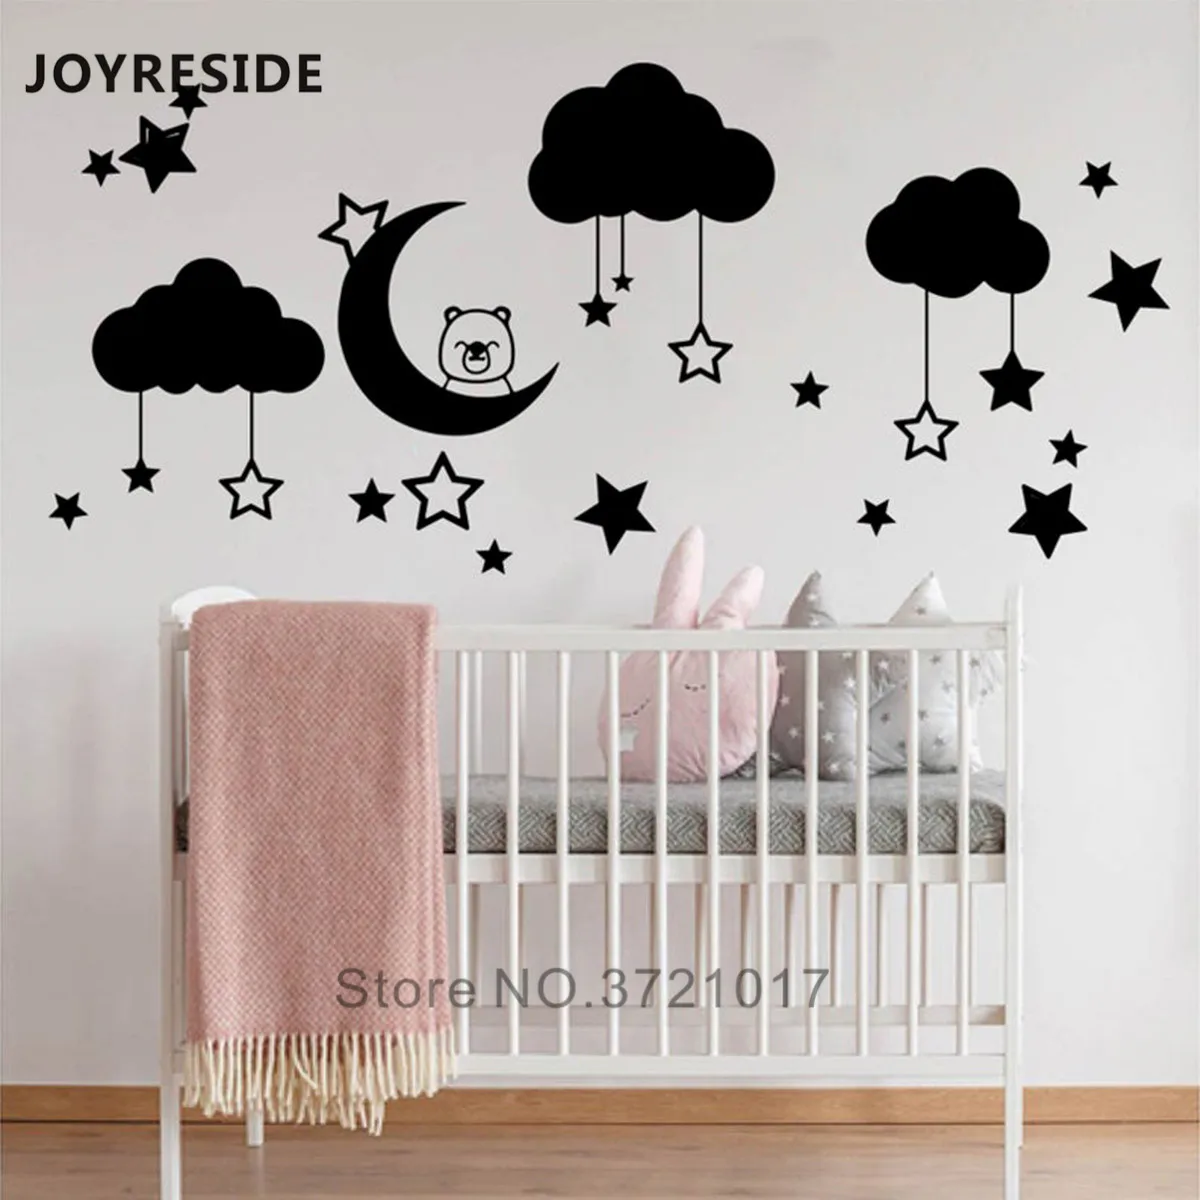 Swinno Adhesivo decorativo para pared de habitación infantil diseño de nubes